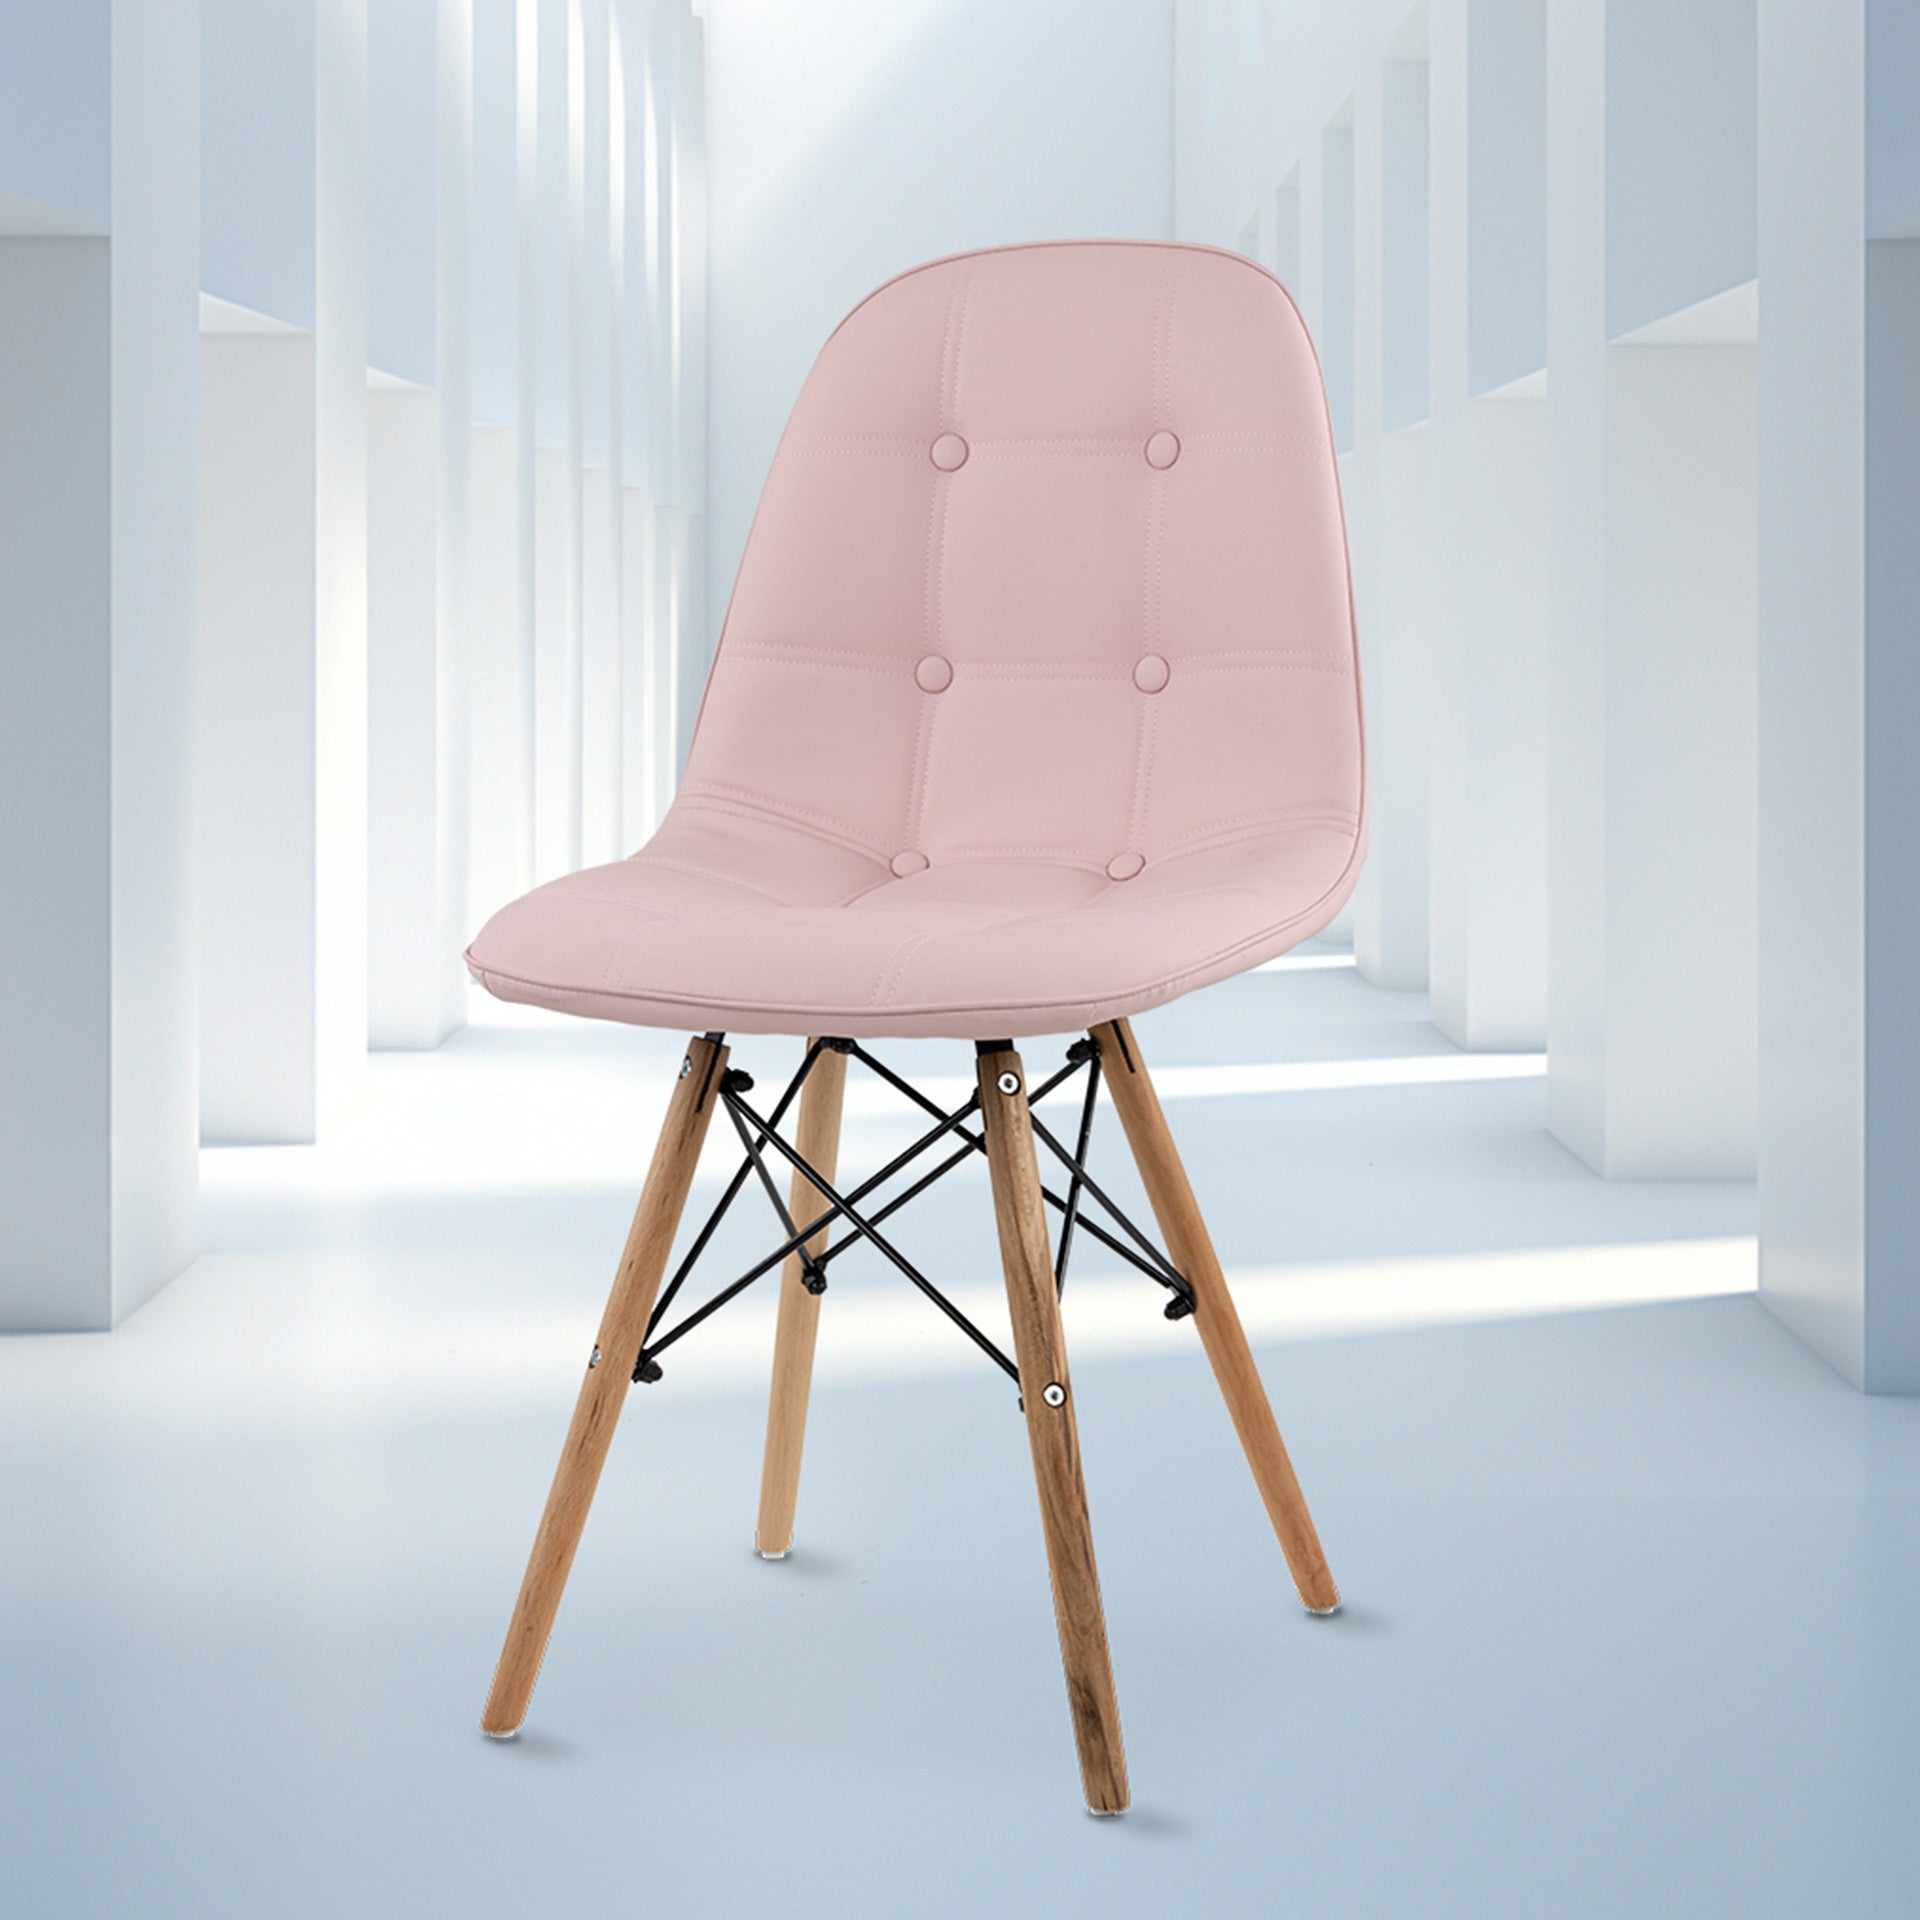 Frente completo de la silla shell con botones de color rosa.  Silla Moderna Eames con Botones Elegante y Vanguardista | Silla de Comedor, Oficina, Sala de Estar Estilo Minimalista | Varios Colores (Rosa)